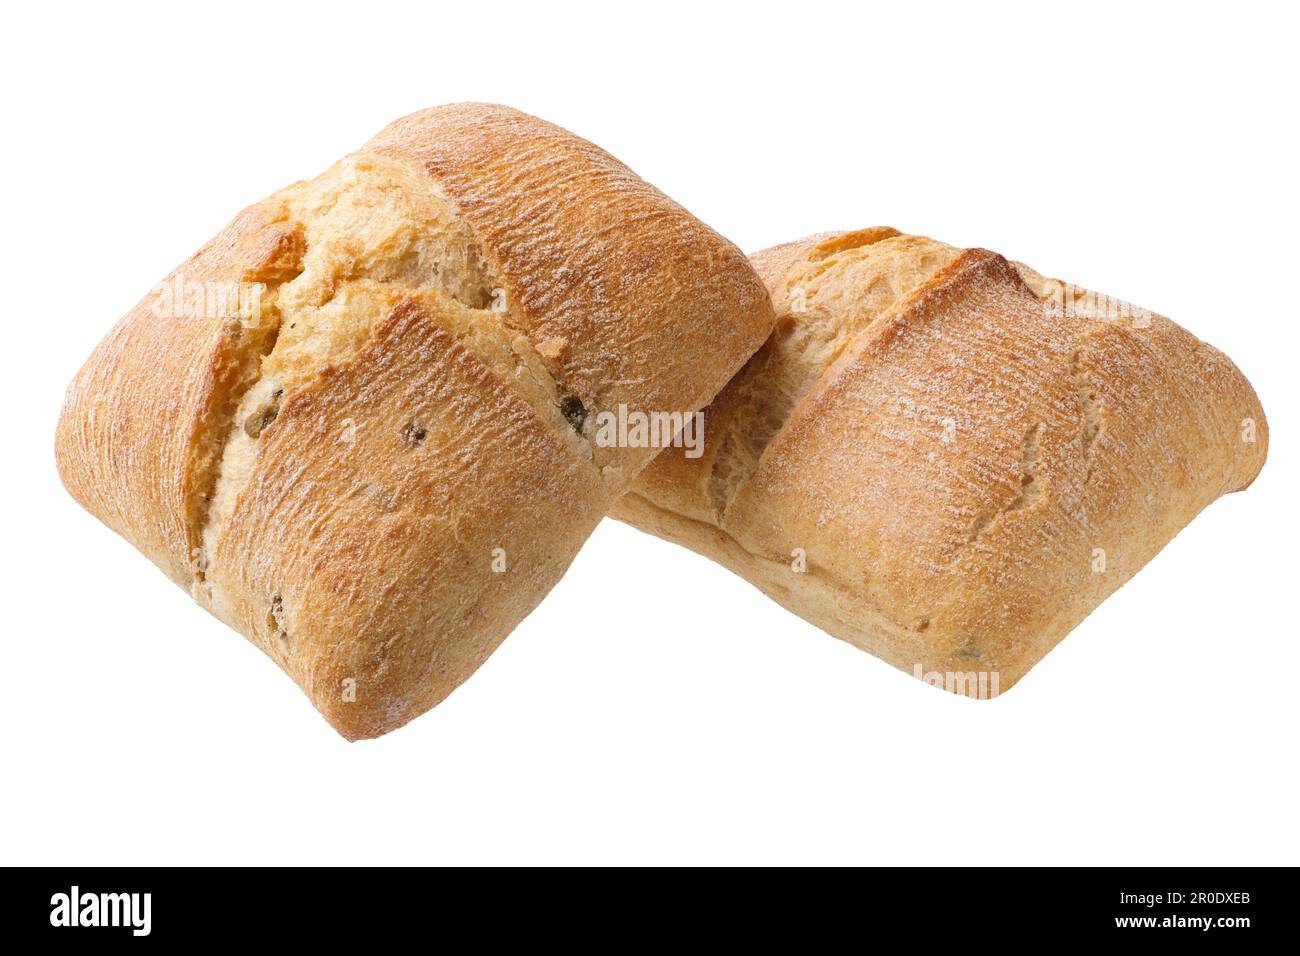 Tradizionale pane italiano fatto in casa, ciabatta, con olive nere, isolato su sfondo bianco Foto Stock